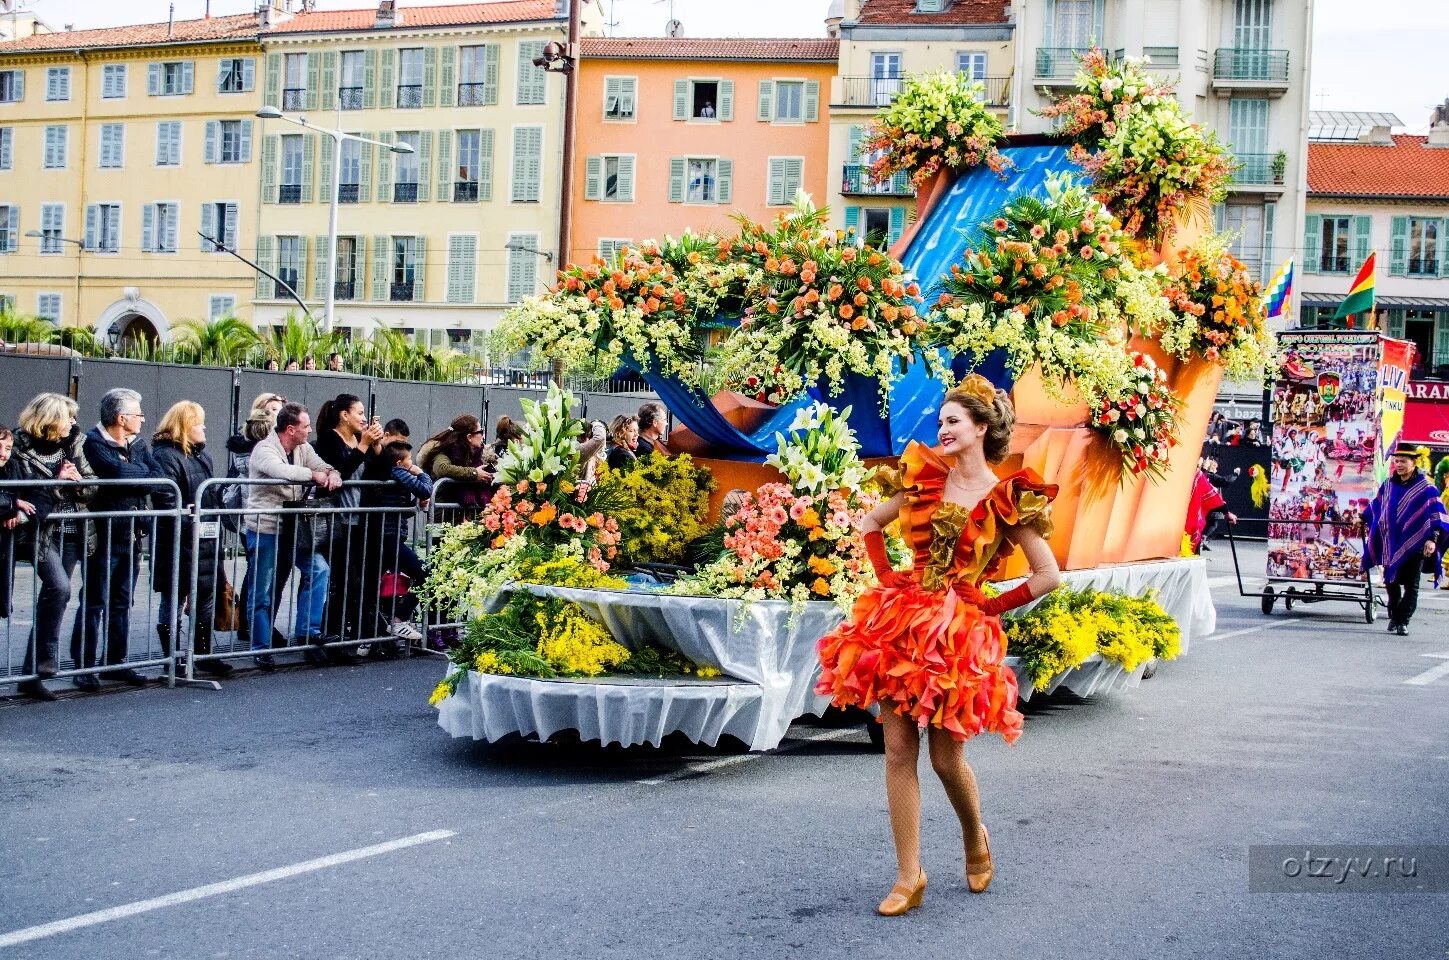 Праздник день мимозы. Карнавал в Ницце битва цветов. Карнавал в Ницце Франция битва цветов. Карнавал цветов в Ницце. Карнавал в Ницце – Ницца, Франция.